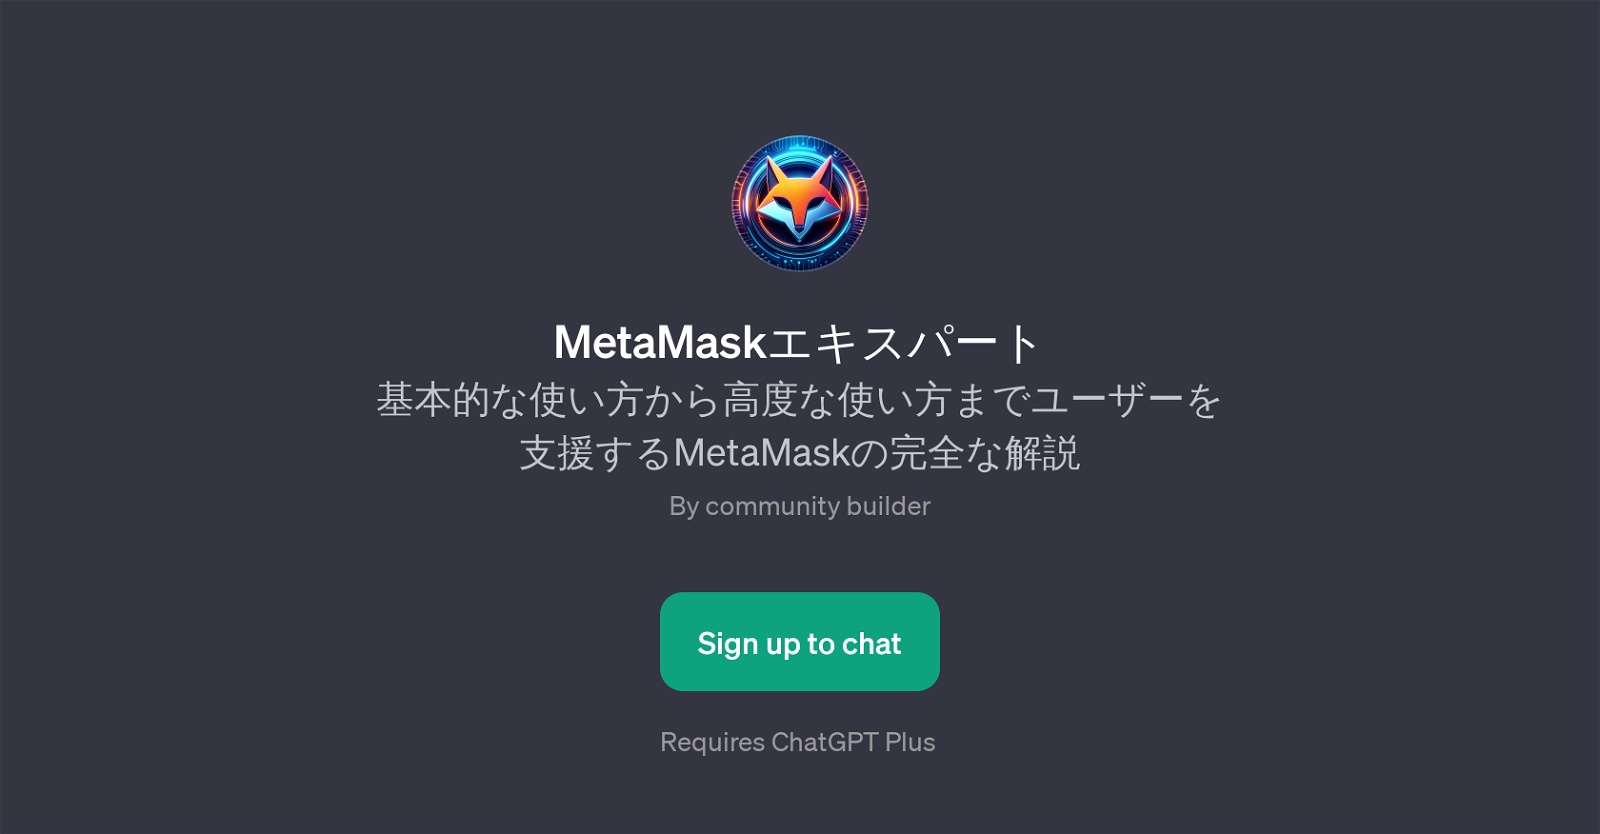 MetaMask website